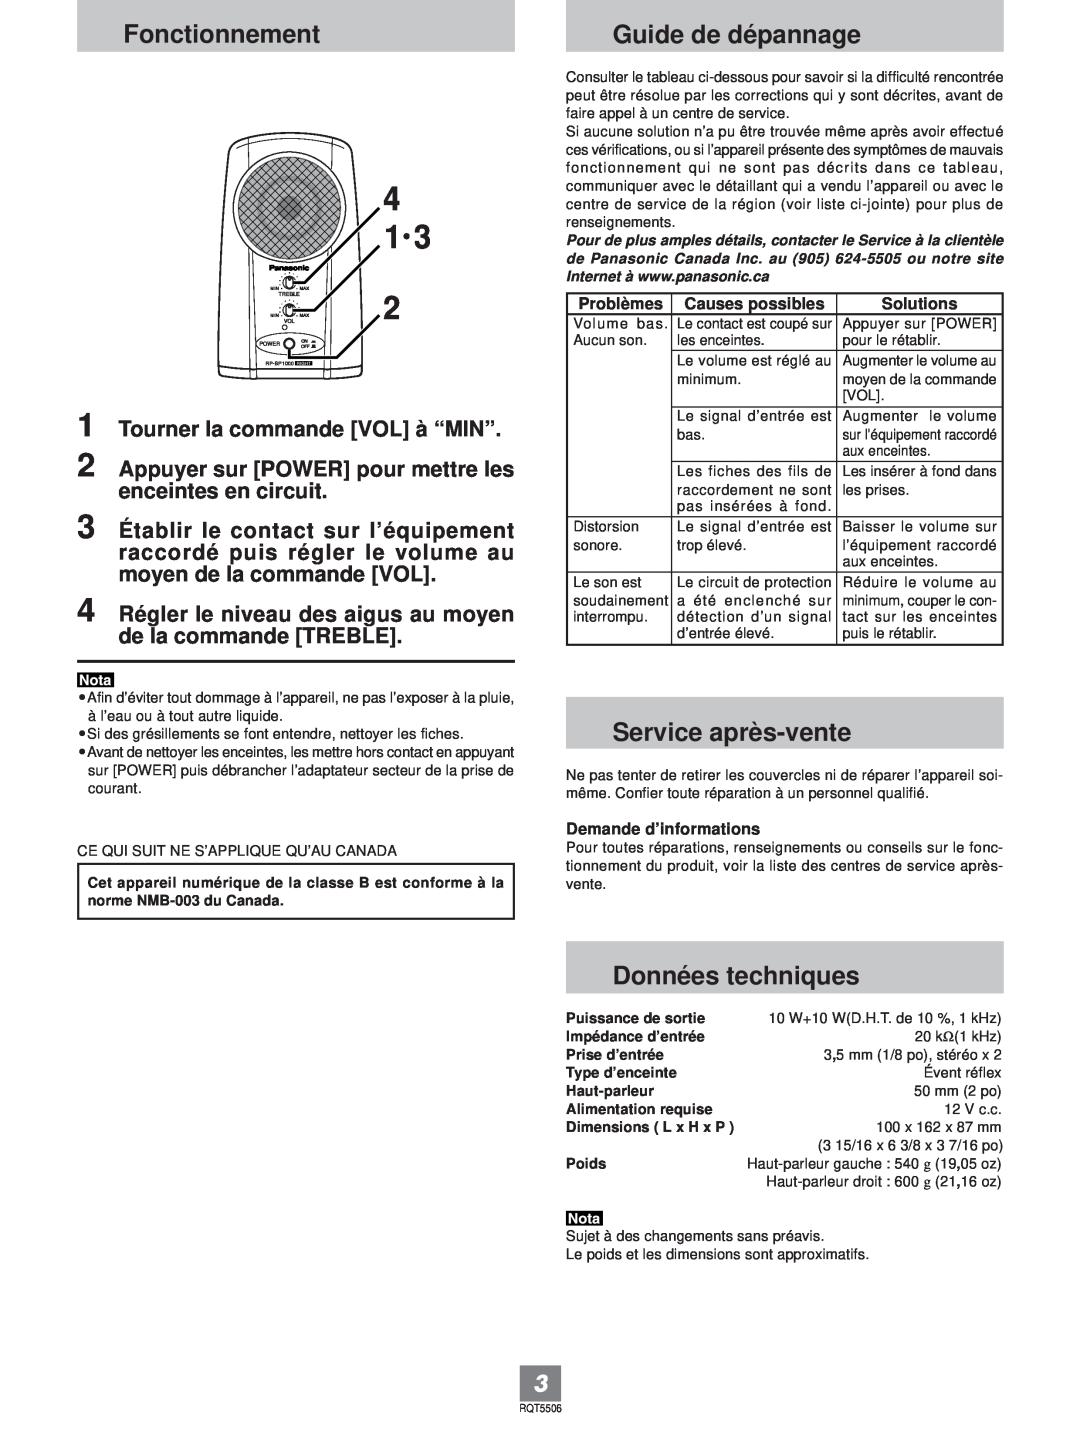 Panasonic RP-SP1000 operating instructions Fonctionnement, Guide de dépannage, Service après-vente, Données techniques 